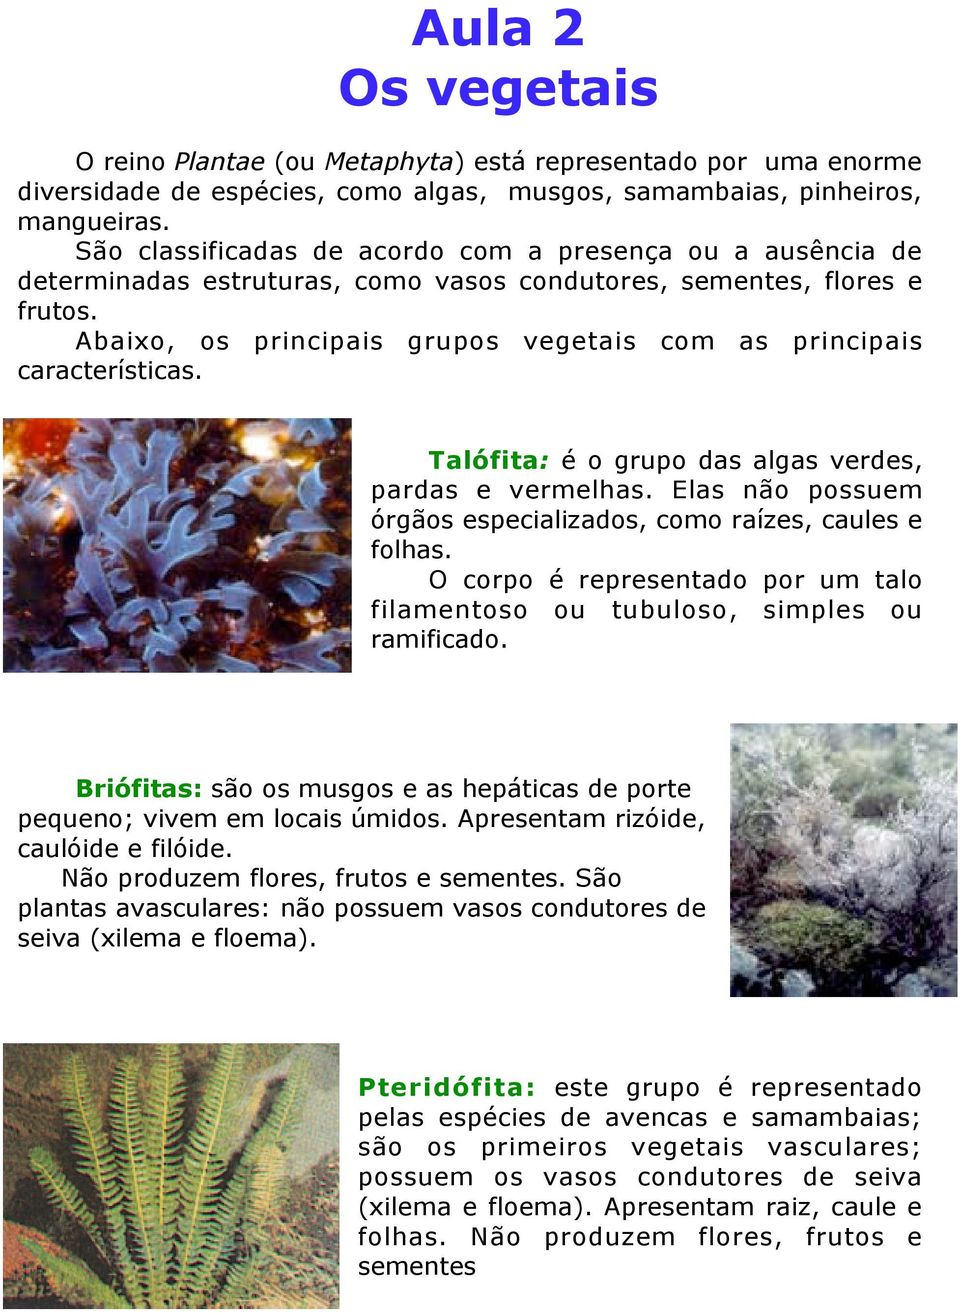 Abaixo, os principais grupos vegetais com as principais características. Talófita: é o grupo das algas verdes, pardas e vermelhas. Elas não possuem órgãos especializados, como raízes, caules e folhas.